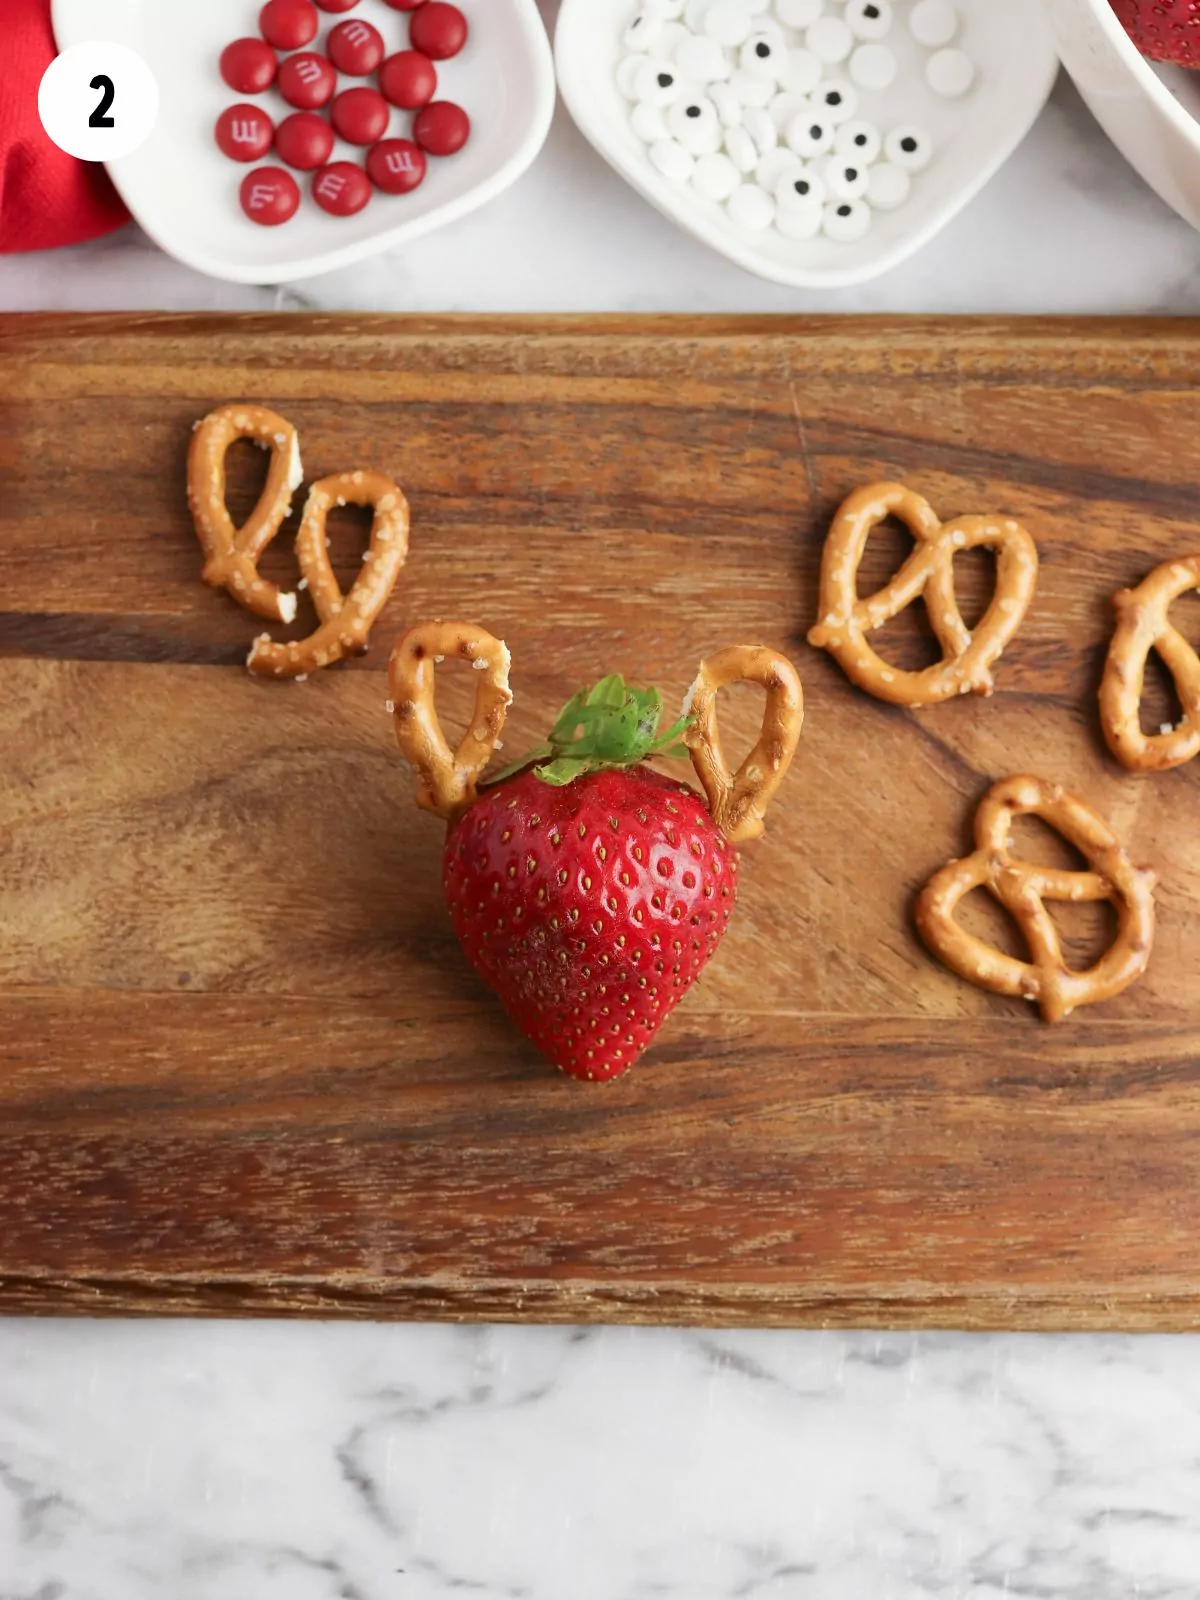 Add pretzels to strawberries.